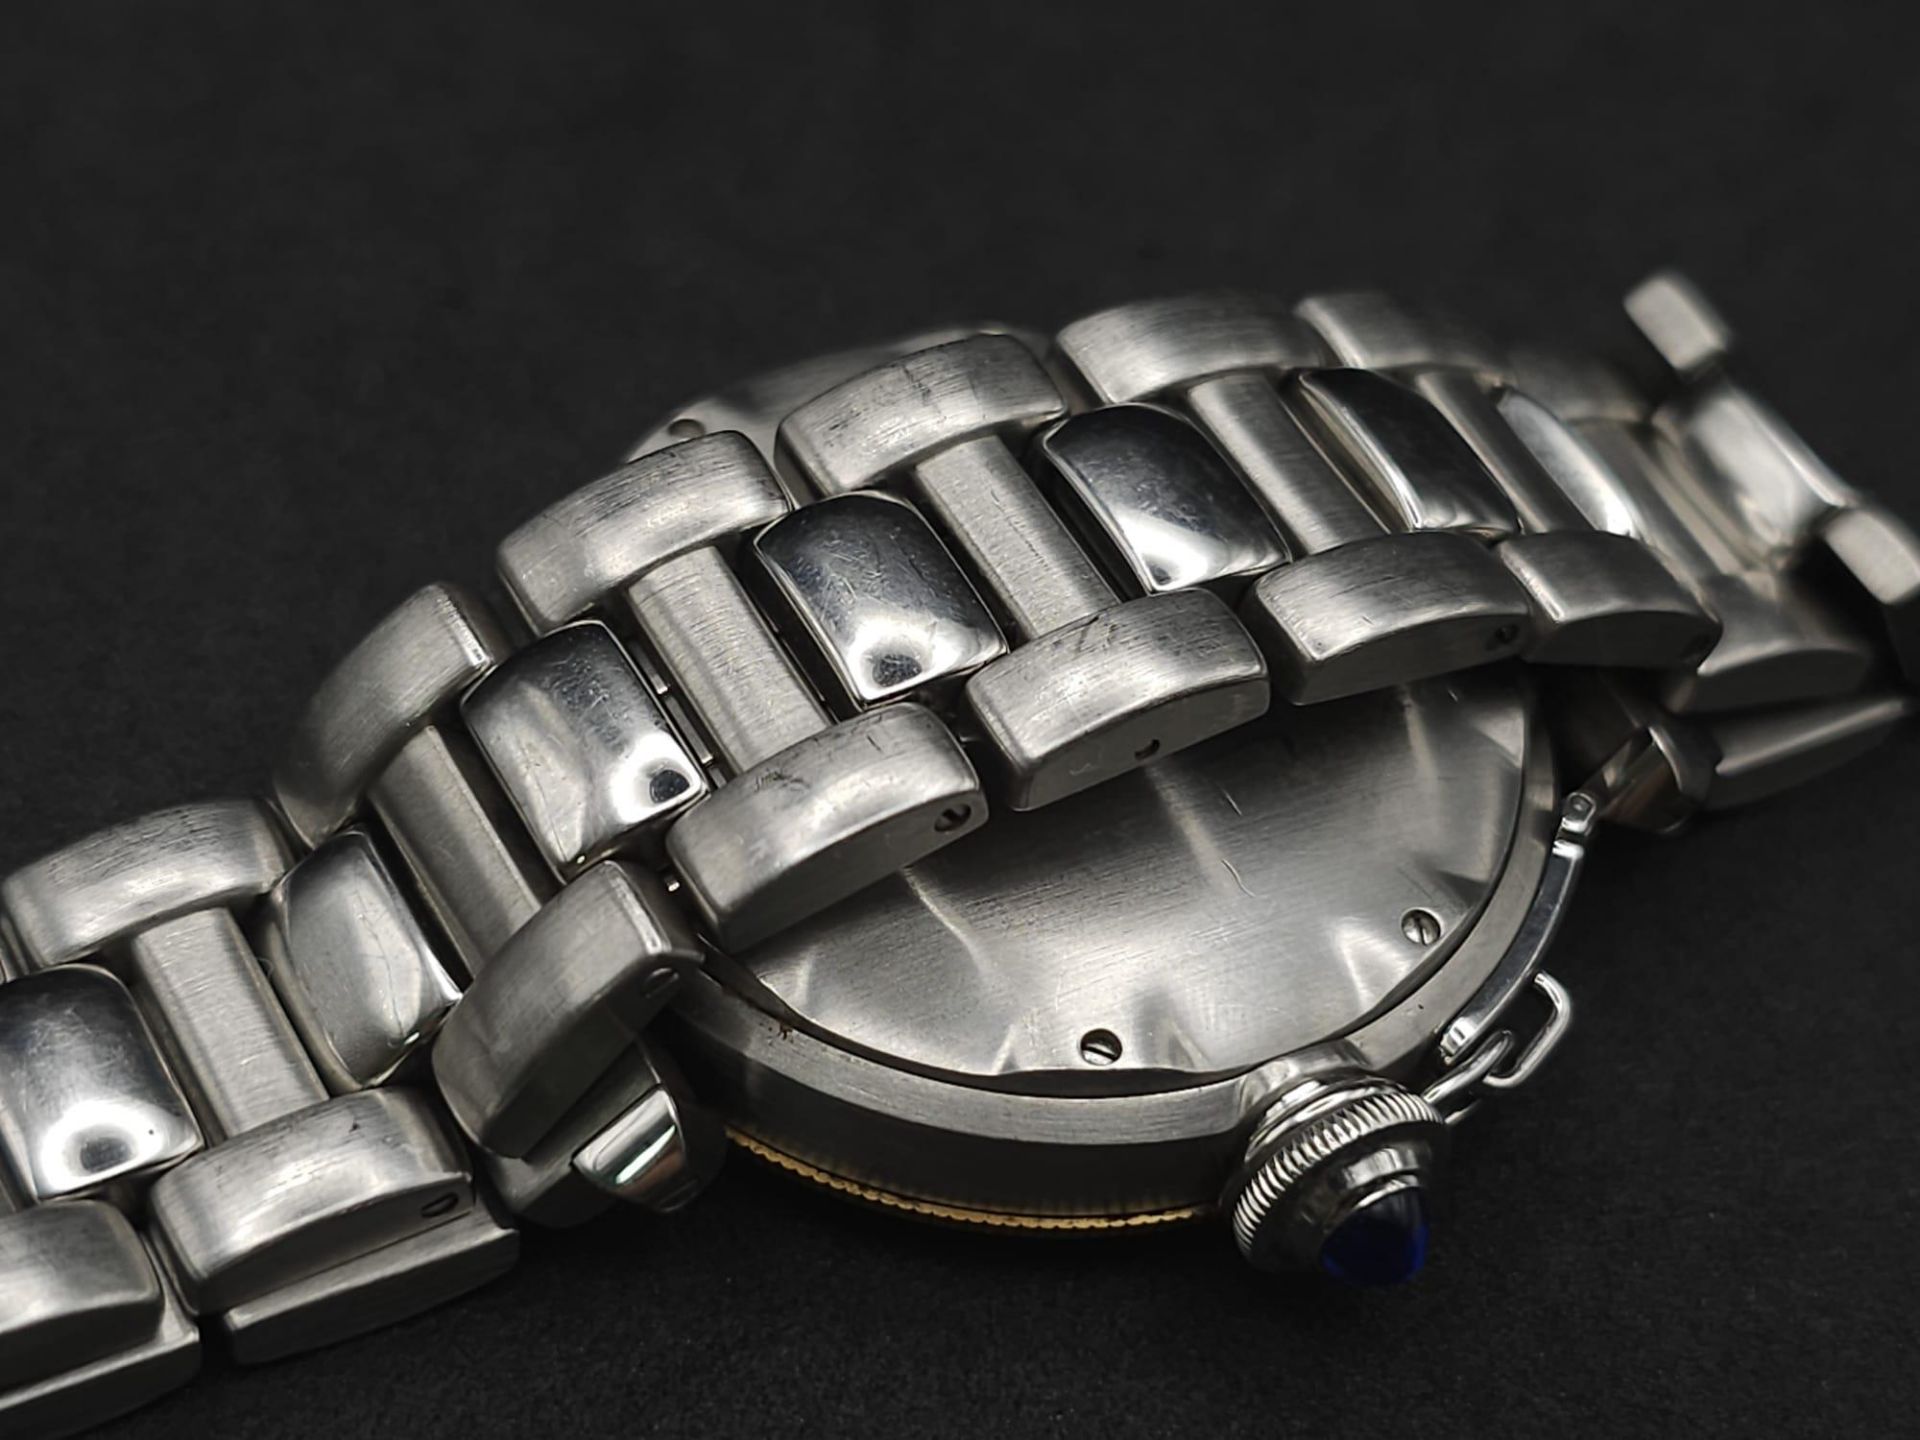 A Cartier de Pasha Automatic Gents Watch. Stainless steel bracelet and case - 38mm. Cream dial - Bild 11 aus 23